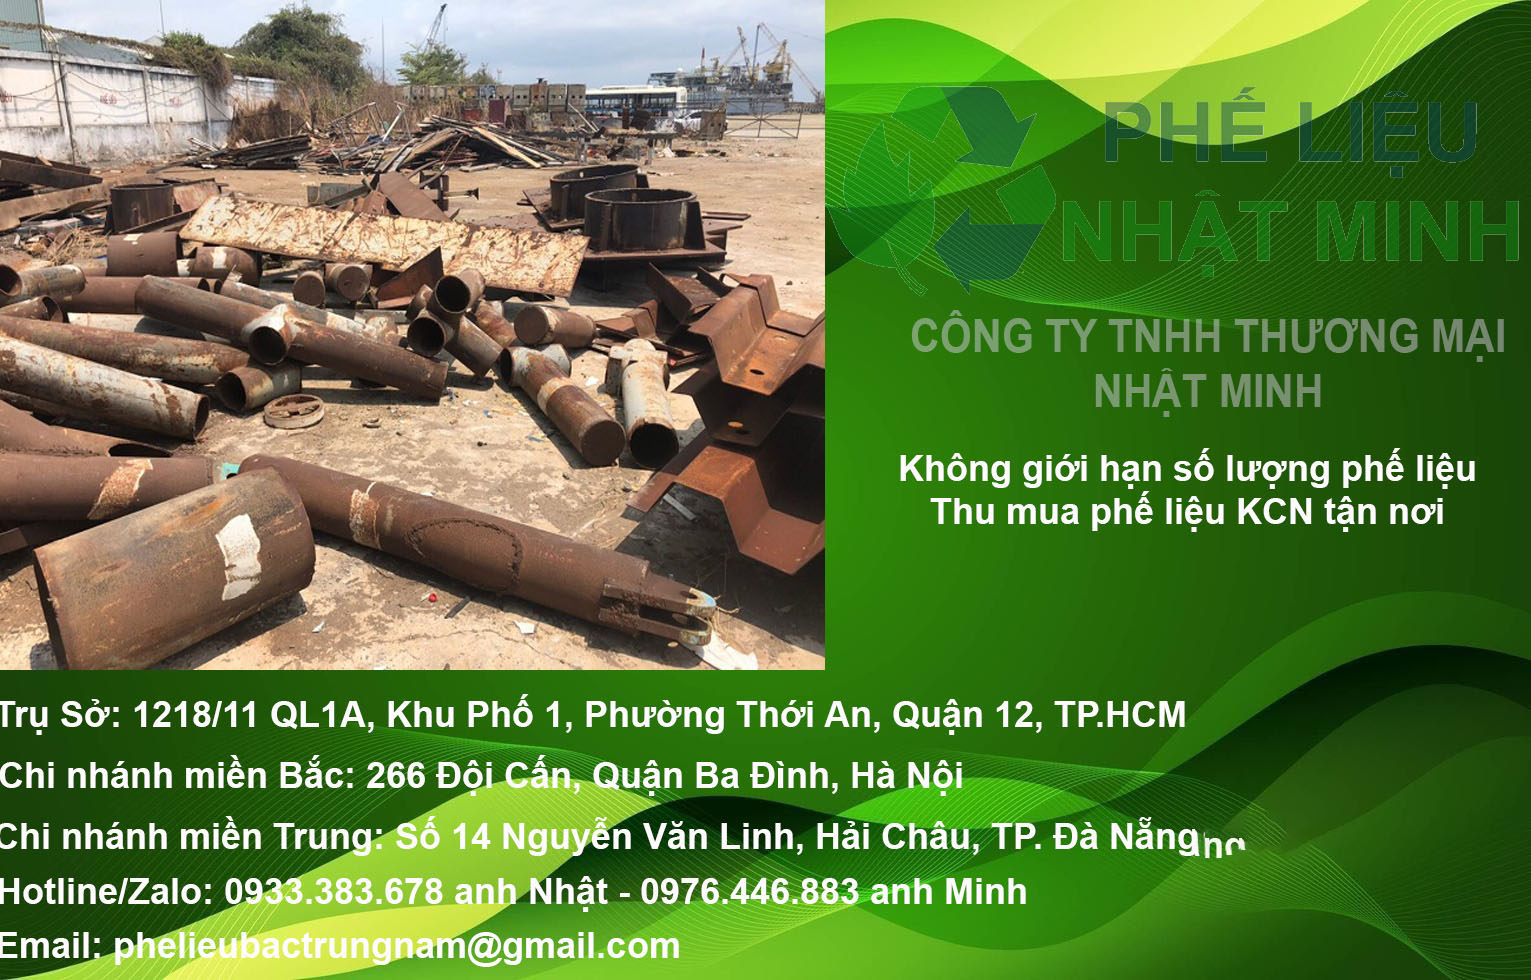 Thu Mua Phe Lieu Tai Cong Ty Nhat Minh